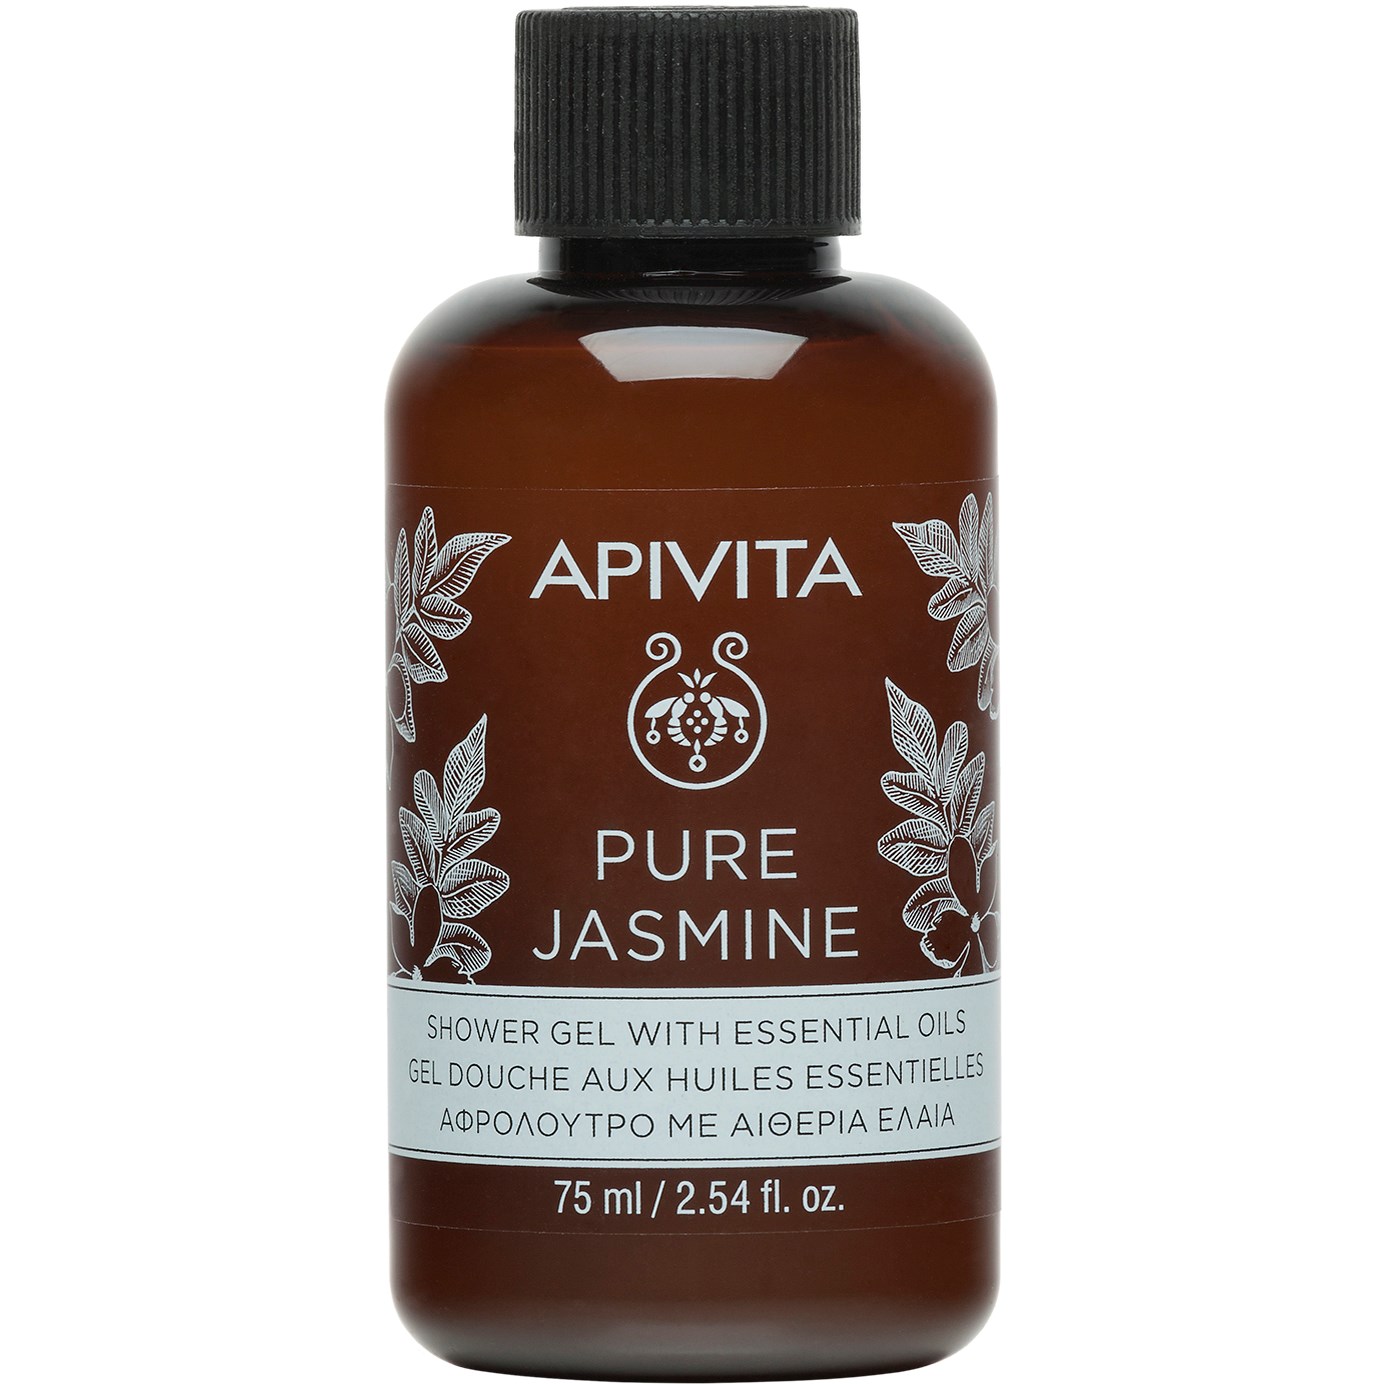 Bilde av Apivita Pure Jasmine Travel Size Shower Gel With Essential Oils With